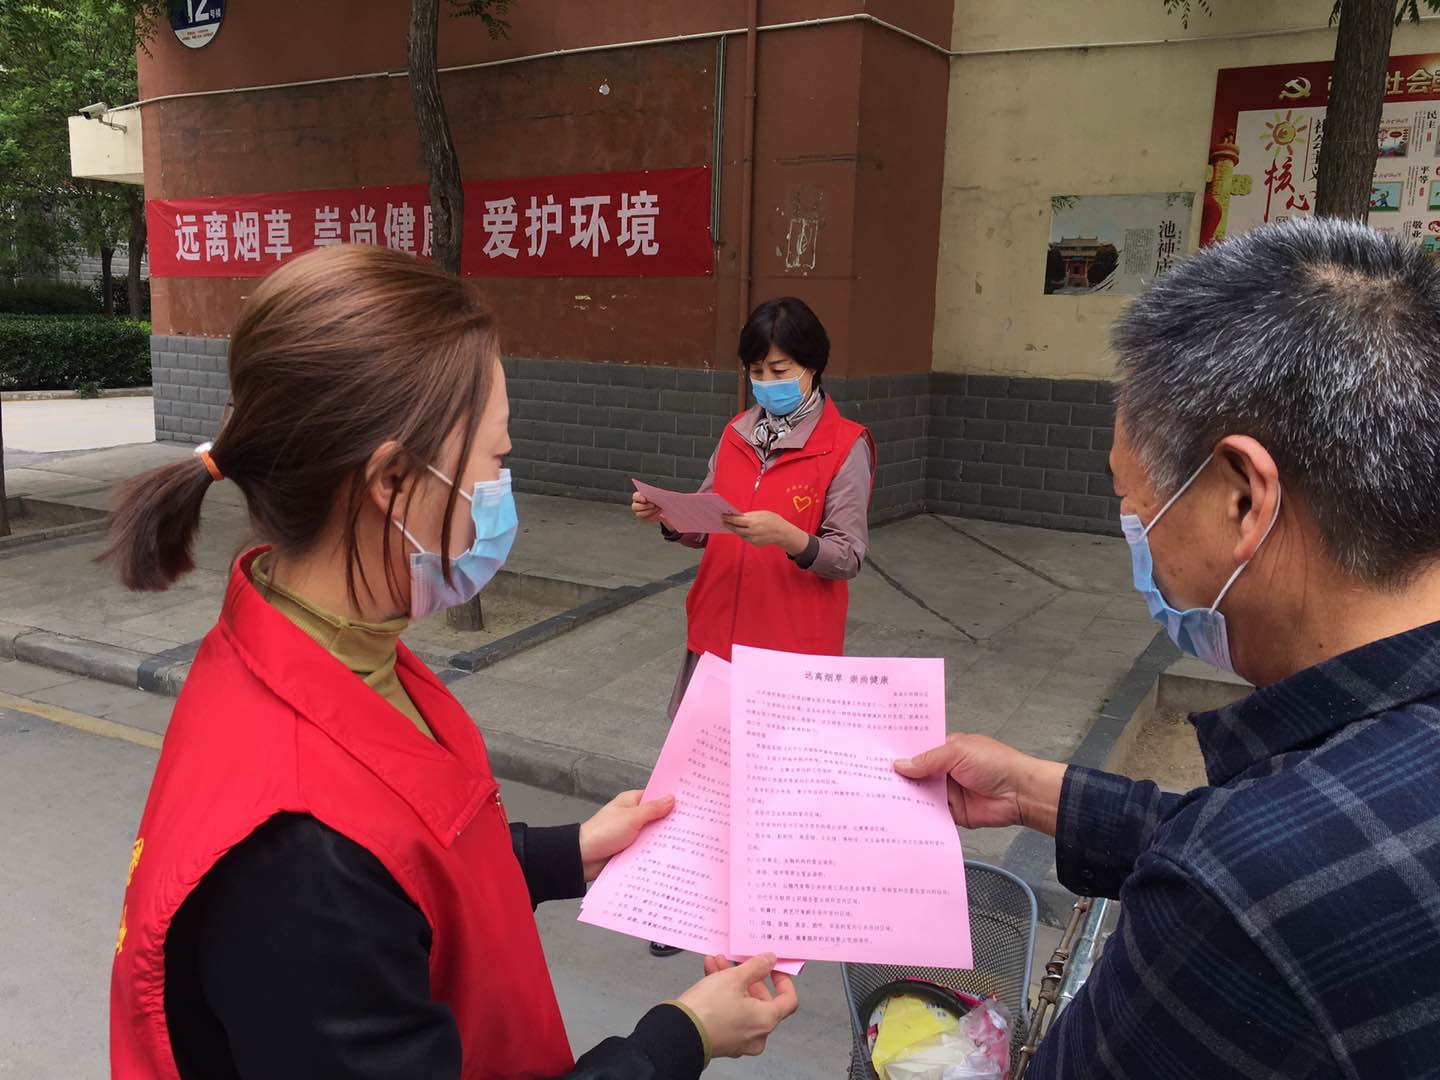 社区工作人员向居民发放禁烟控烟宣传资料 刘凯华 摄